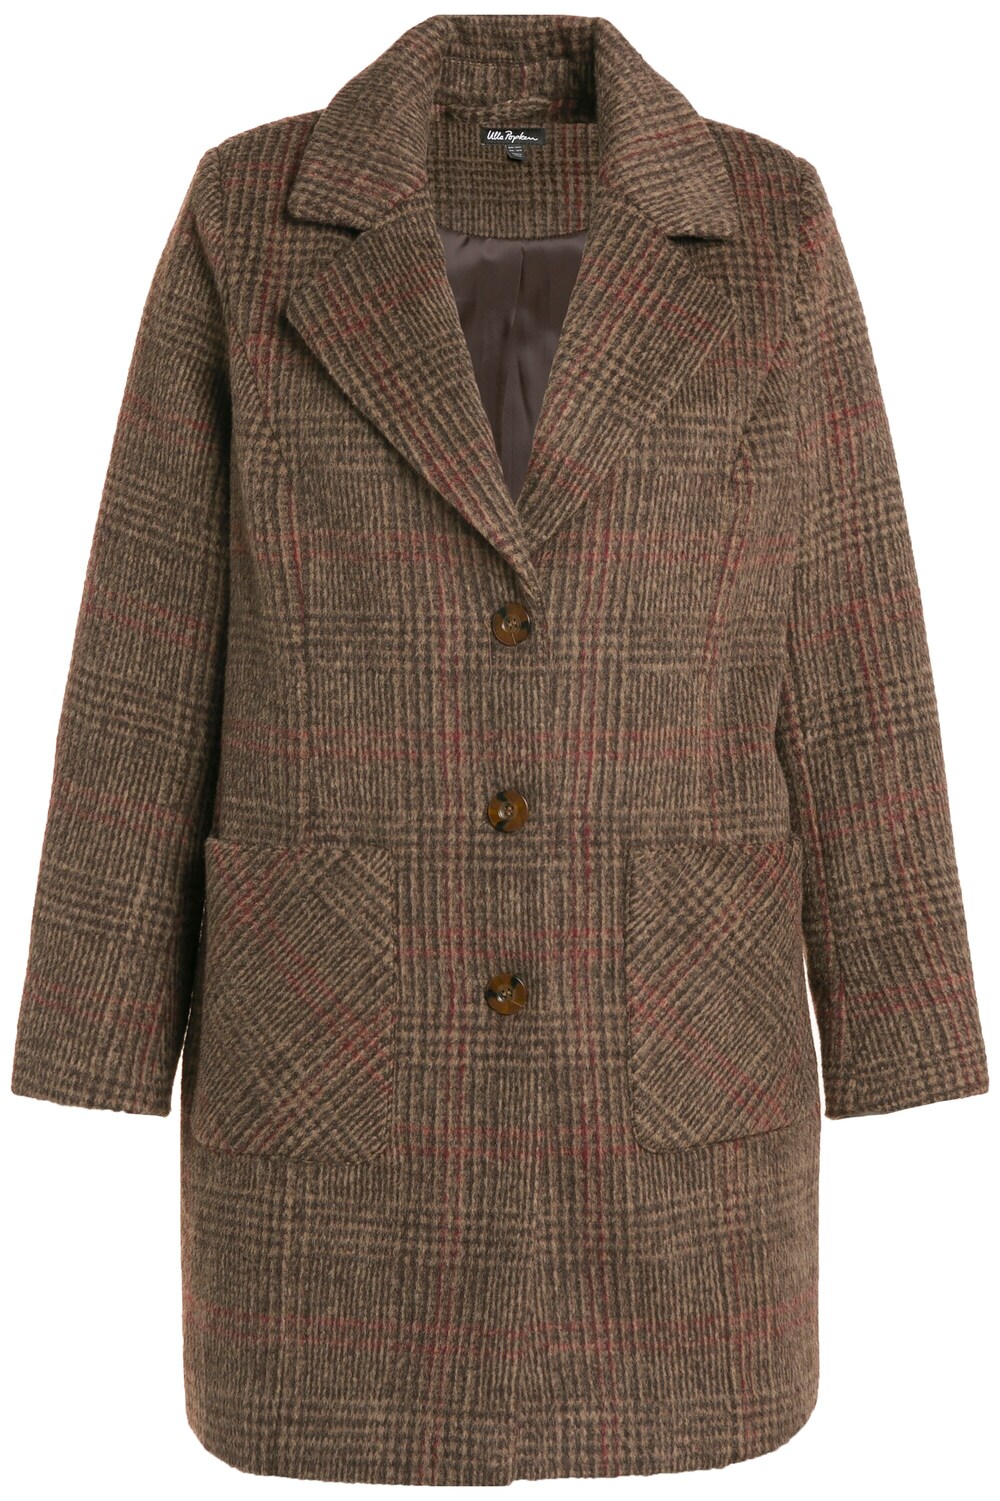 Межсезонное пальто Ulla Popken, пестрый коричневый межсезонное пальто s oliver пестрый бежевый